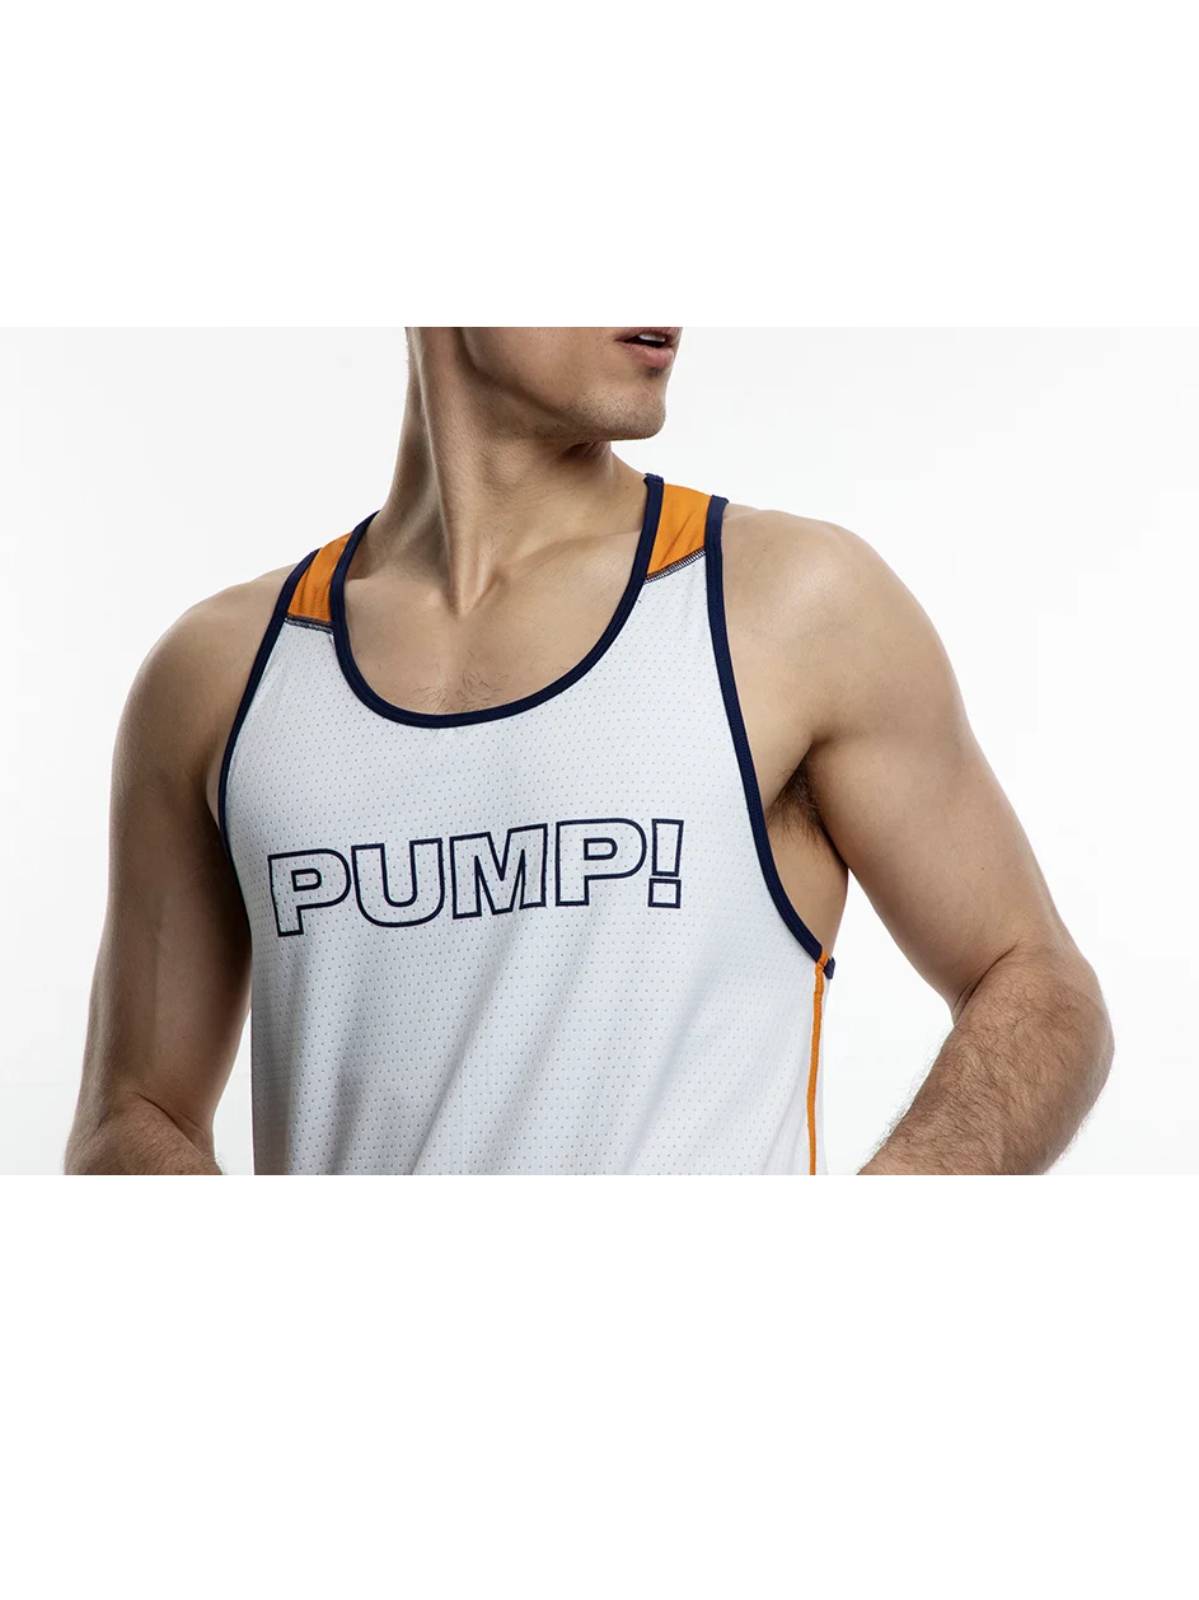 PUMP! Varsity Tank | Orange/Navy/White